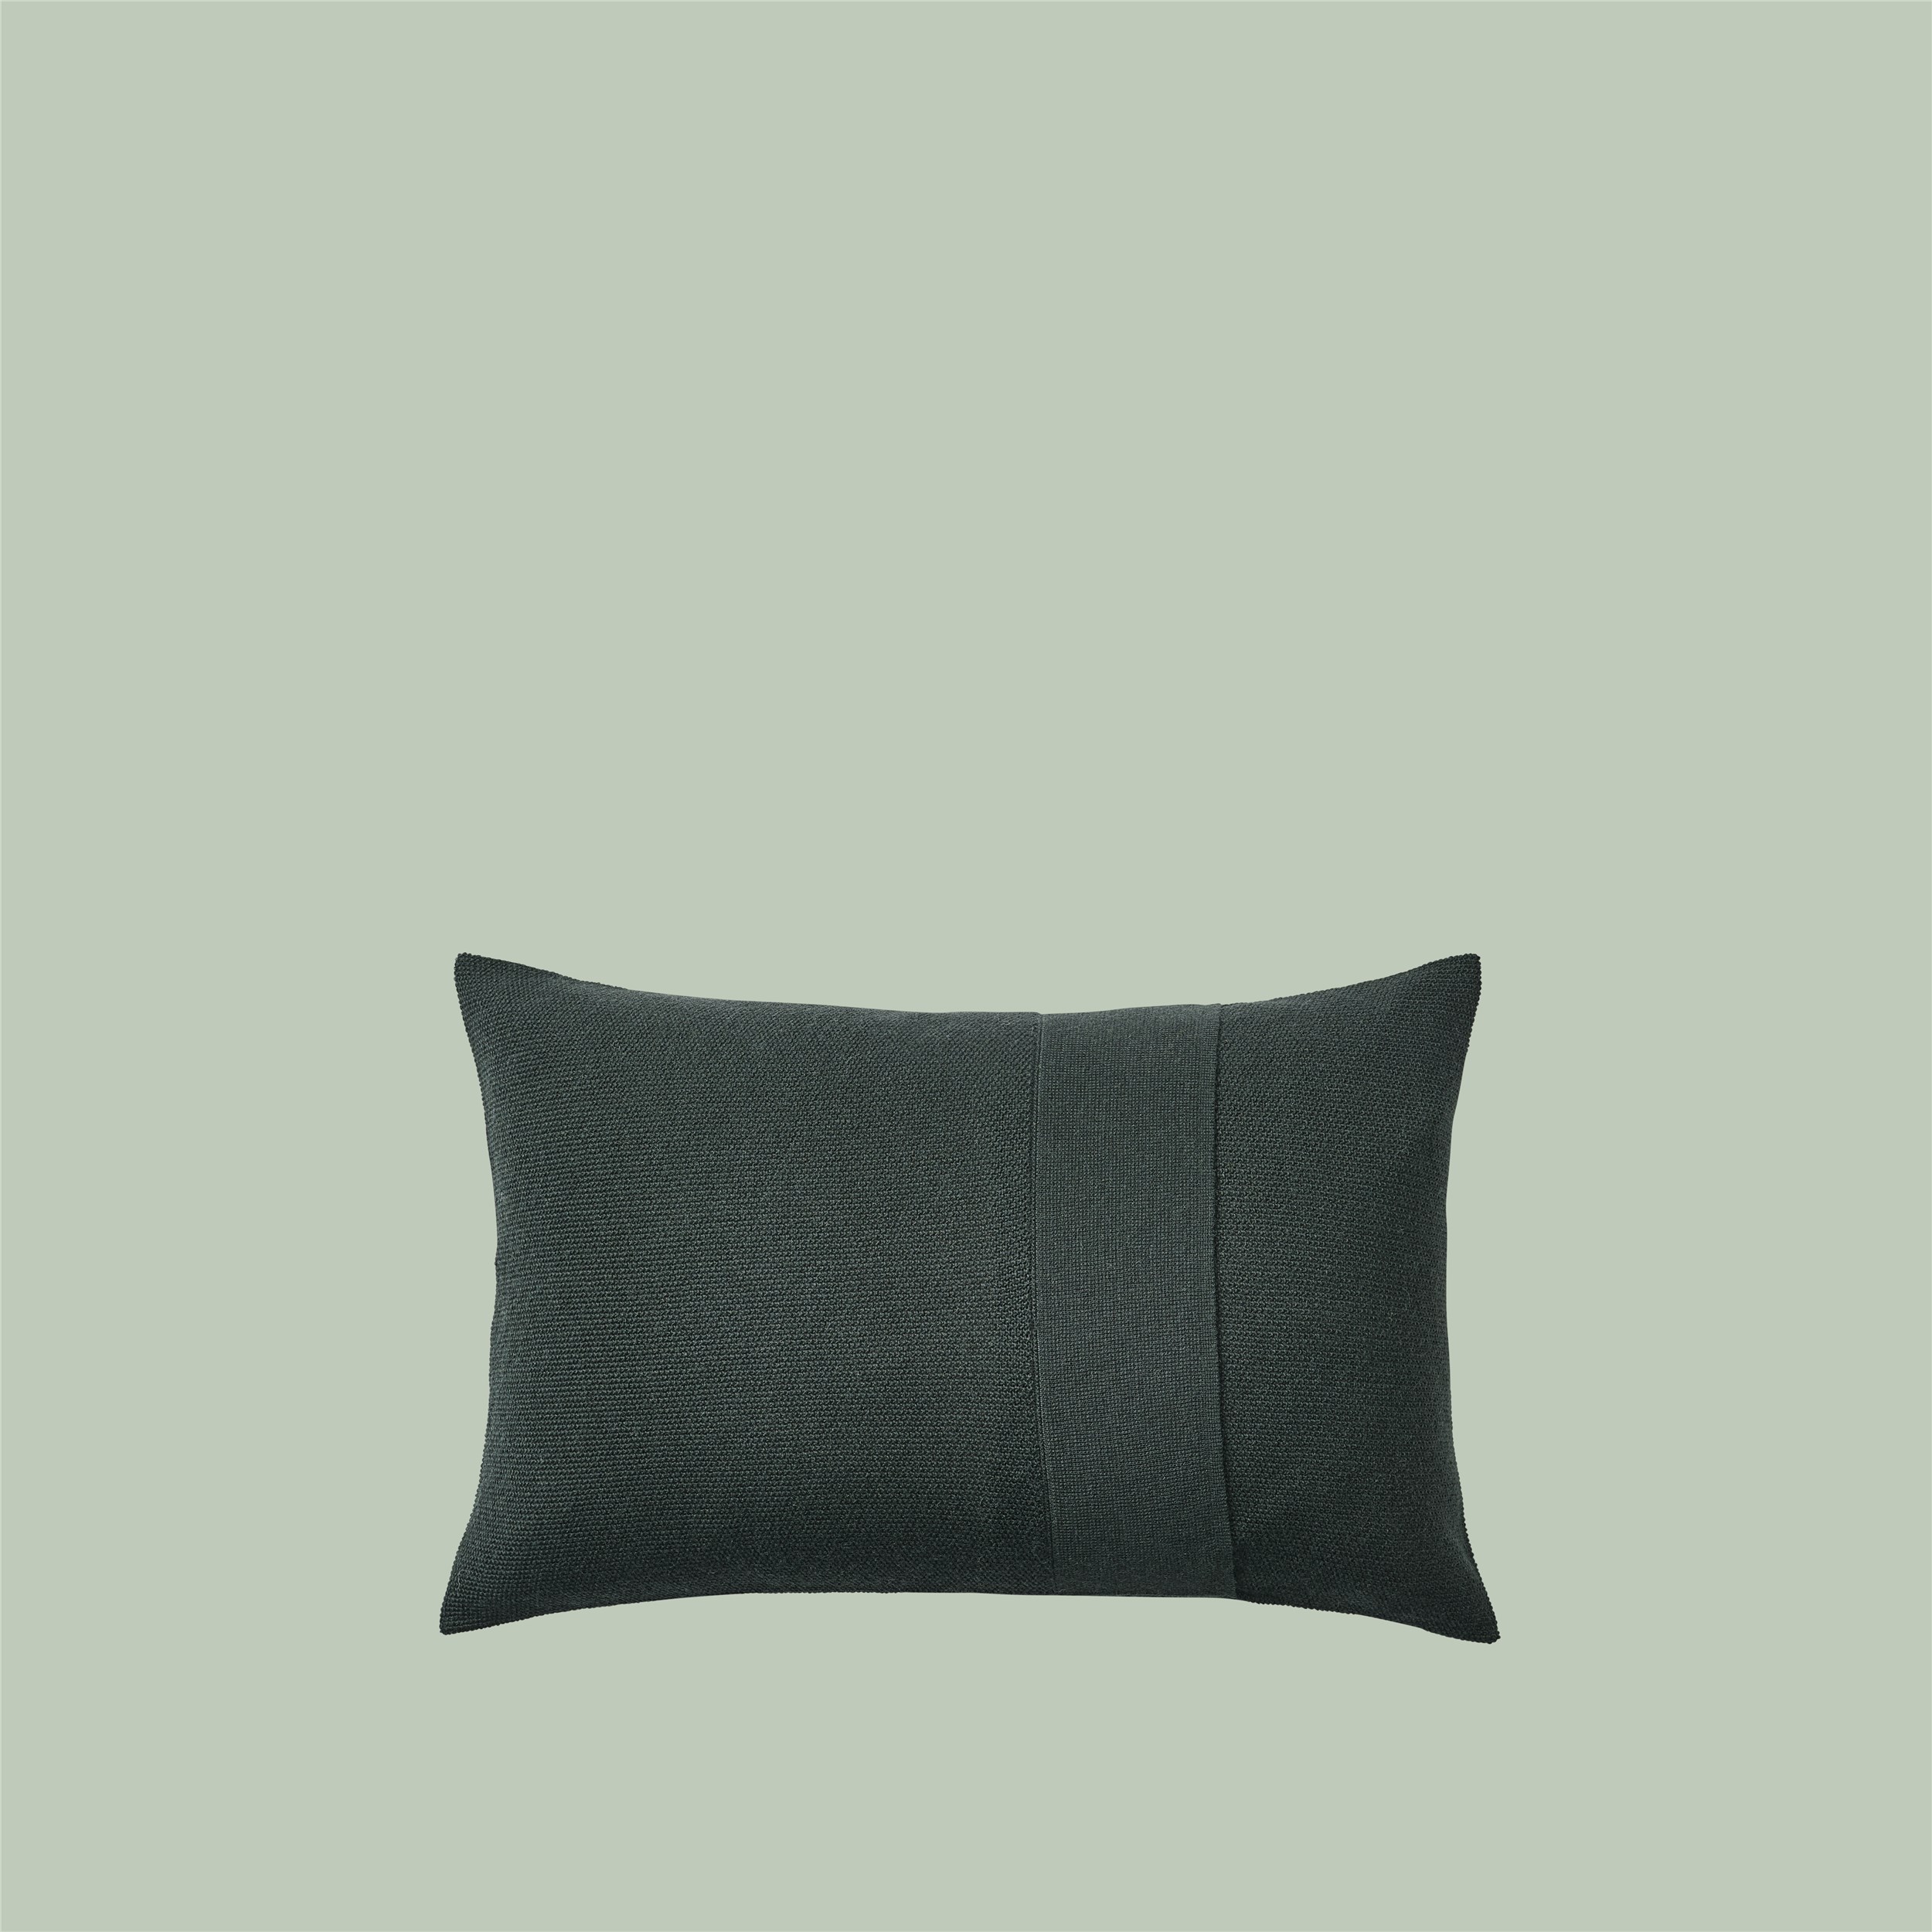 Layer Cushion 40x60 dark green